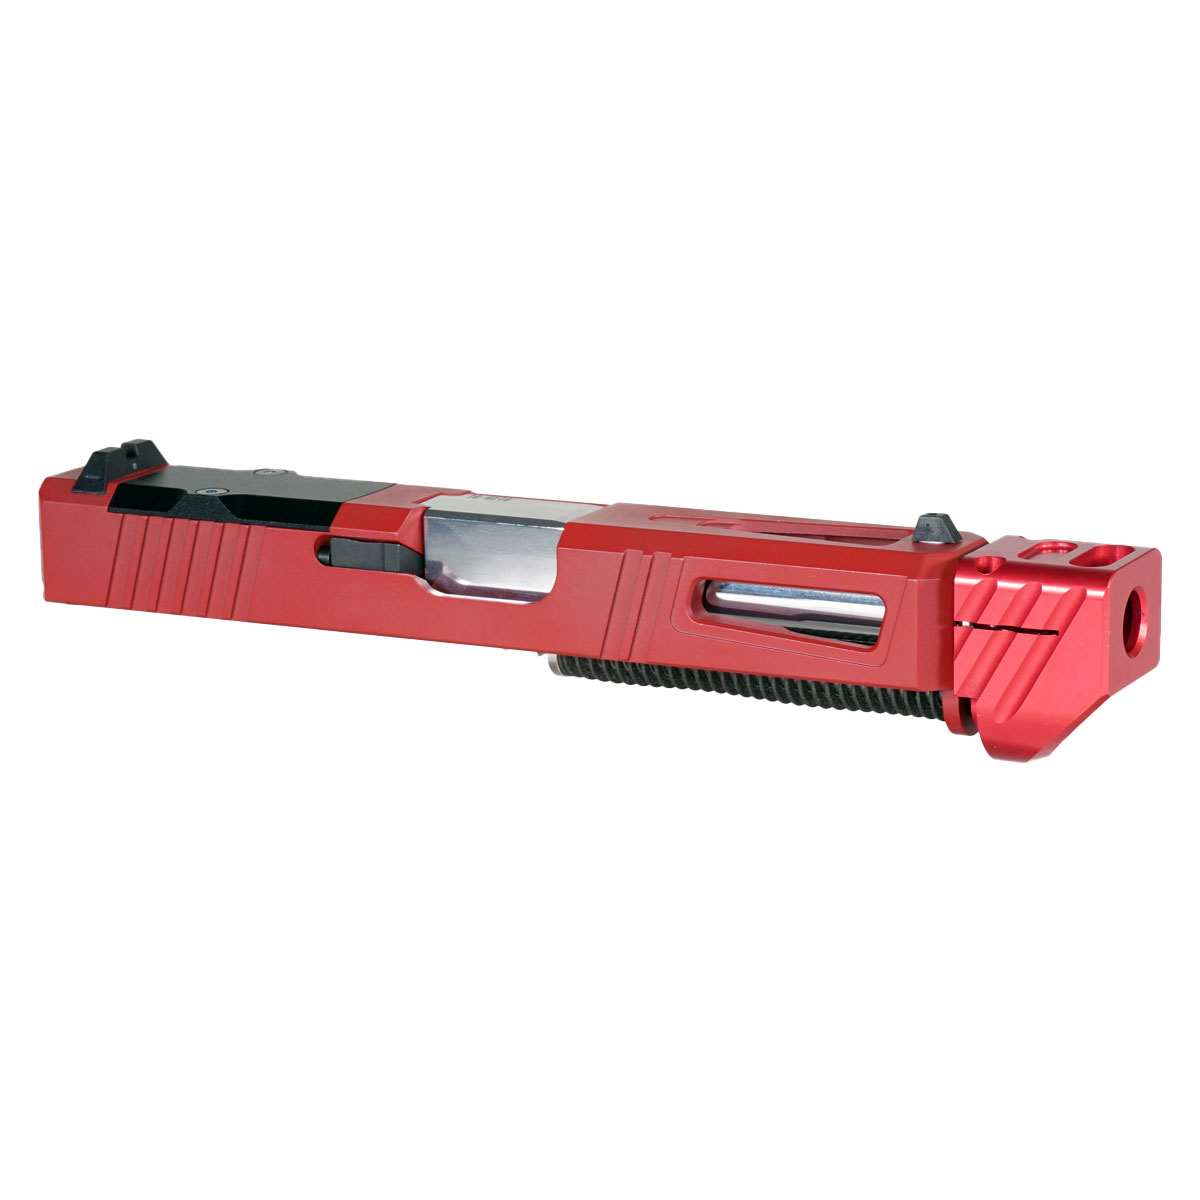 MMC 'Pisa V3 w/ Red Compensator' 9mm Complete Slide Kit - Glock 19 Gen 1-3 Compatible